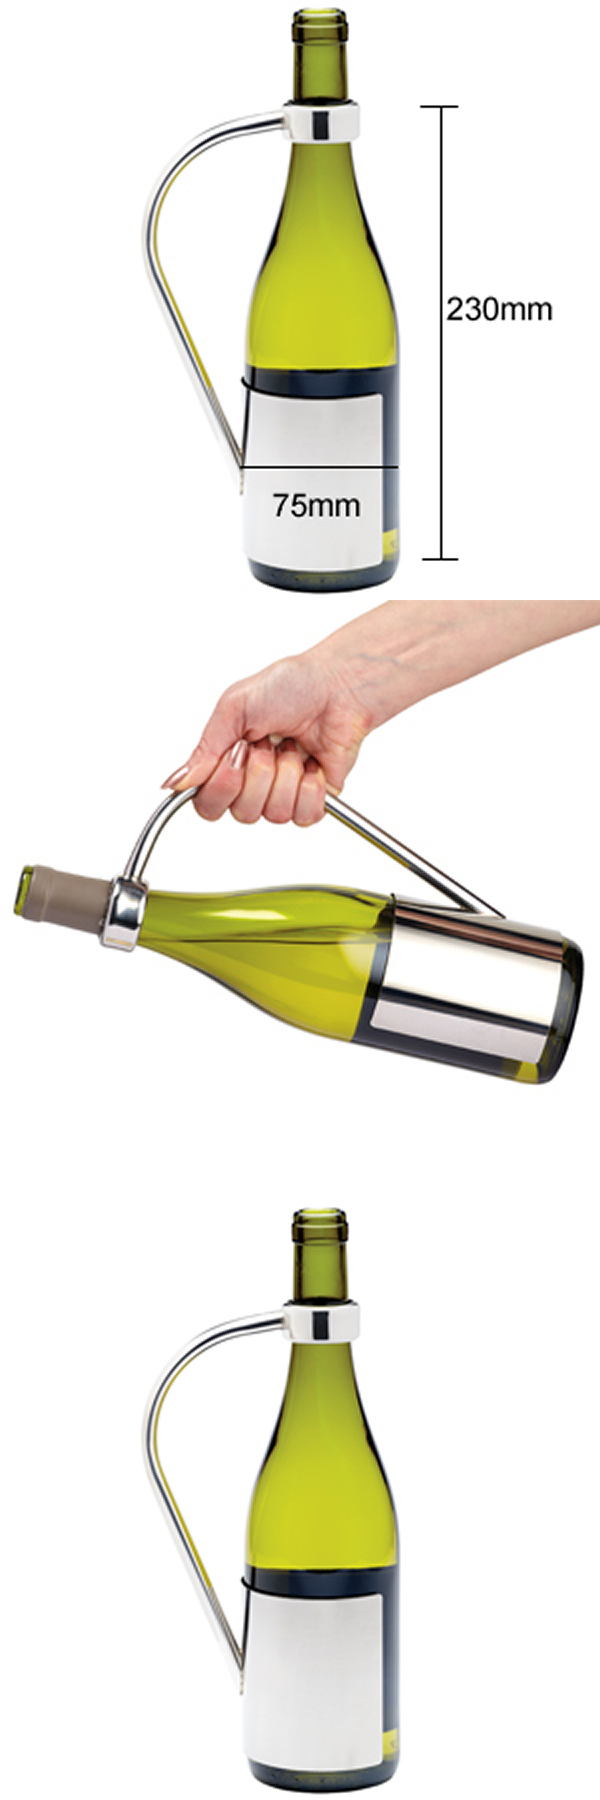 Stainless Steel wine bottle holder